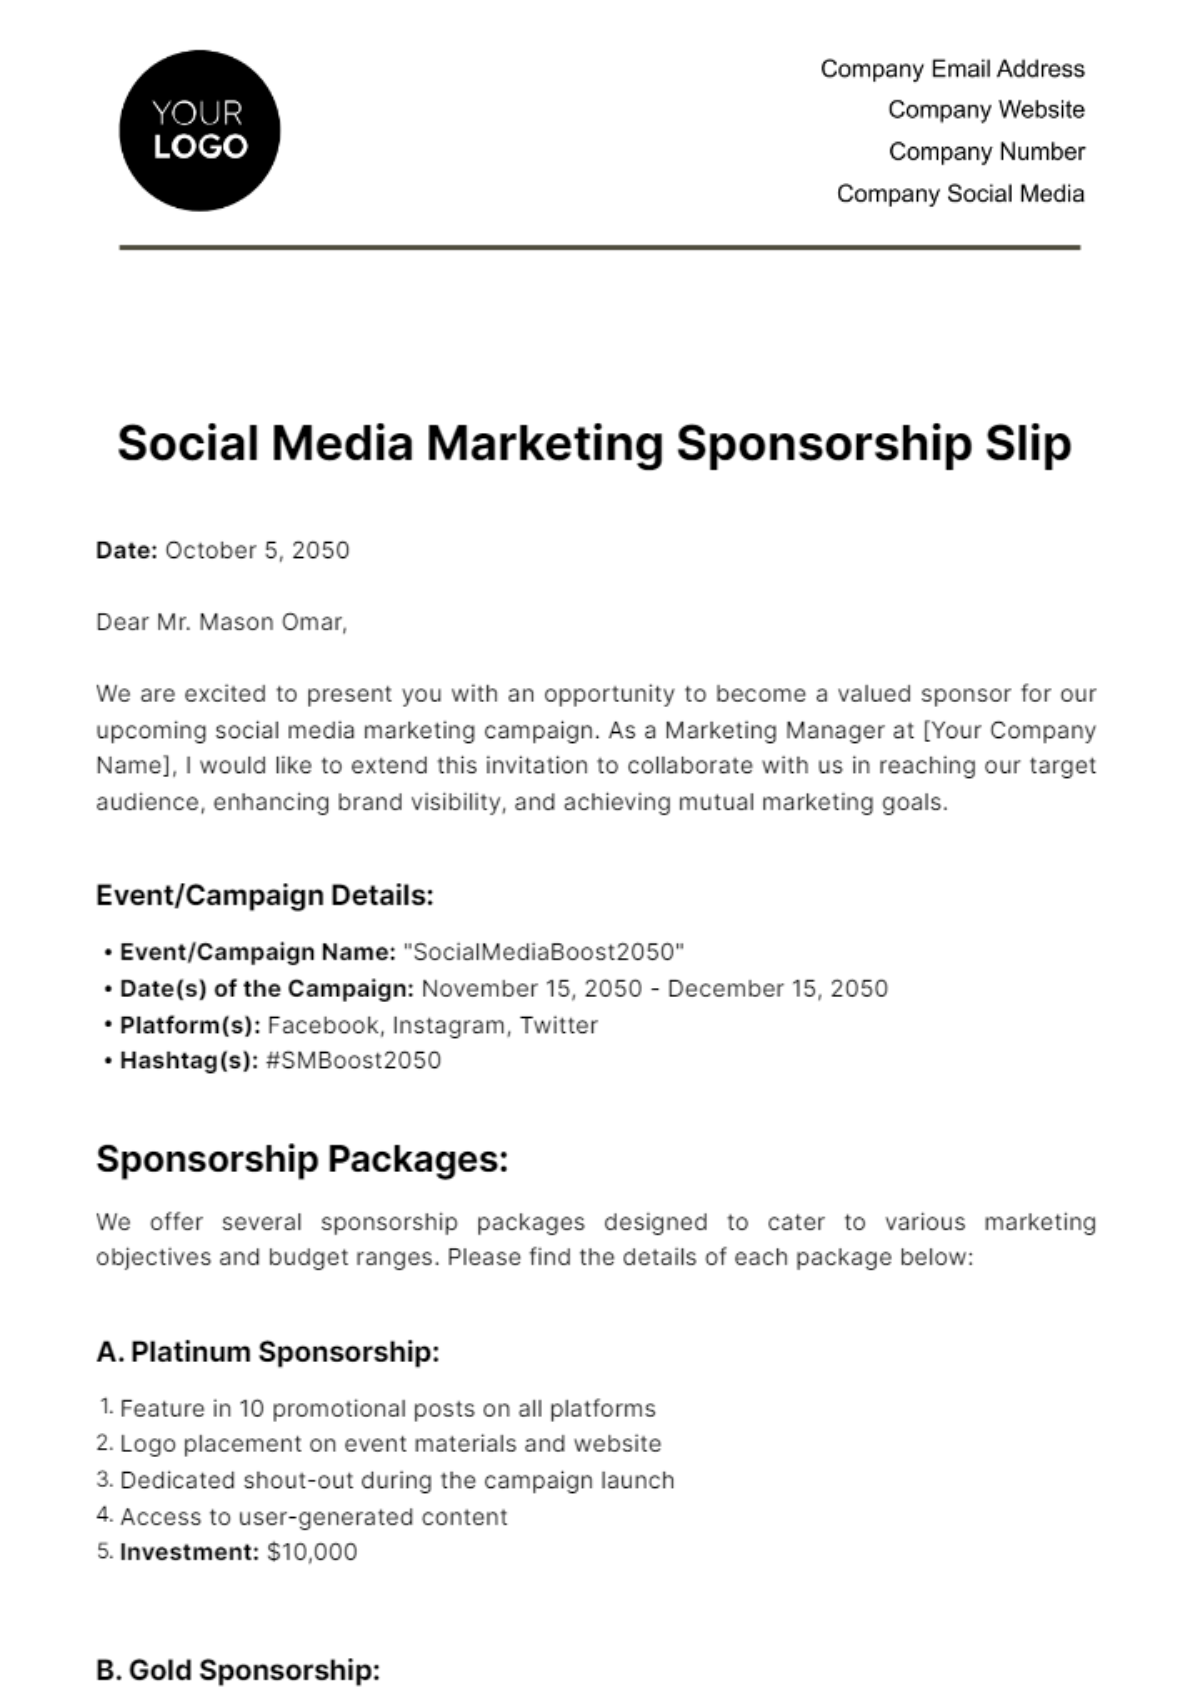 Free Social Media Marketing Sponsorship Slip Template